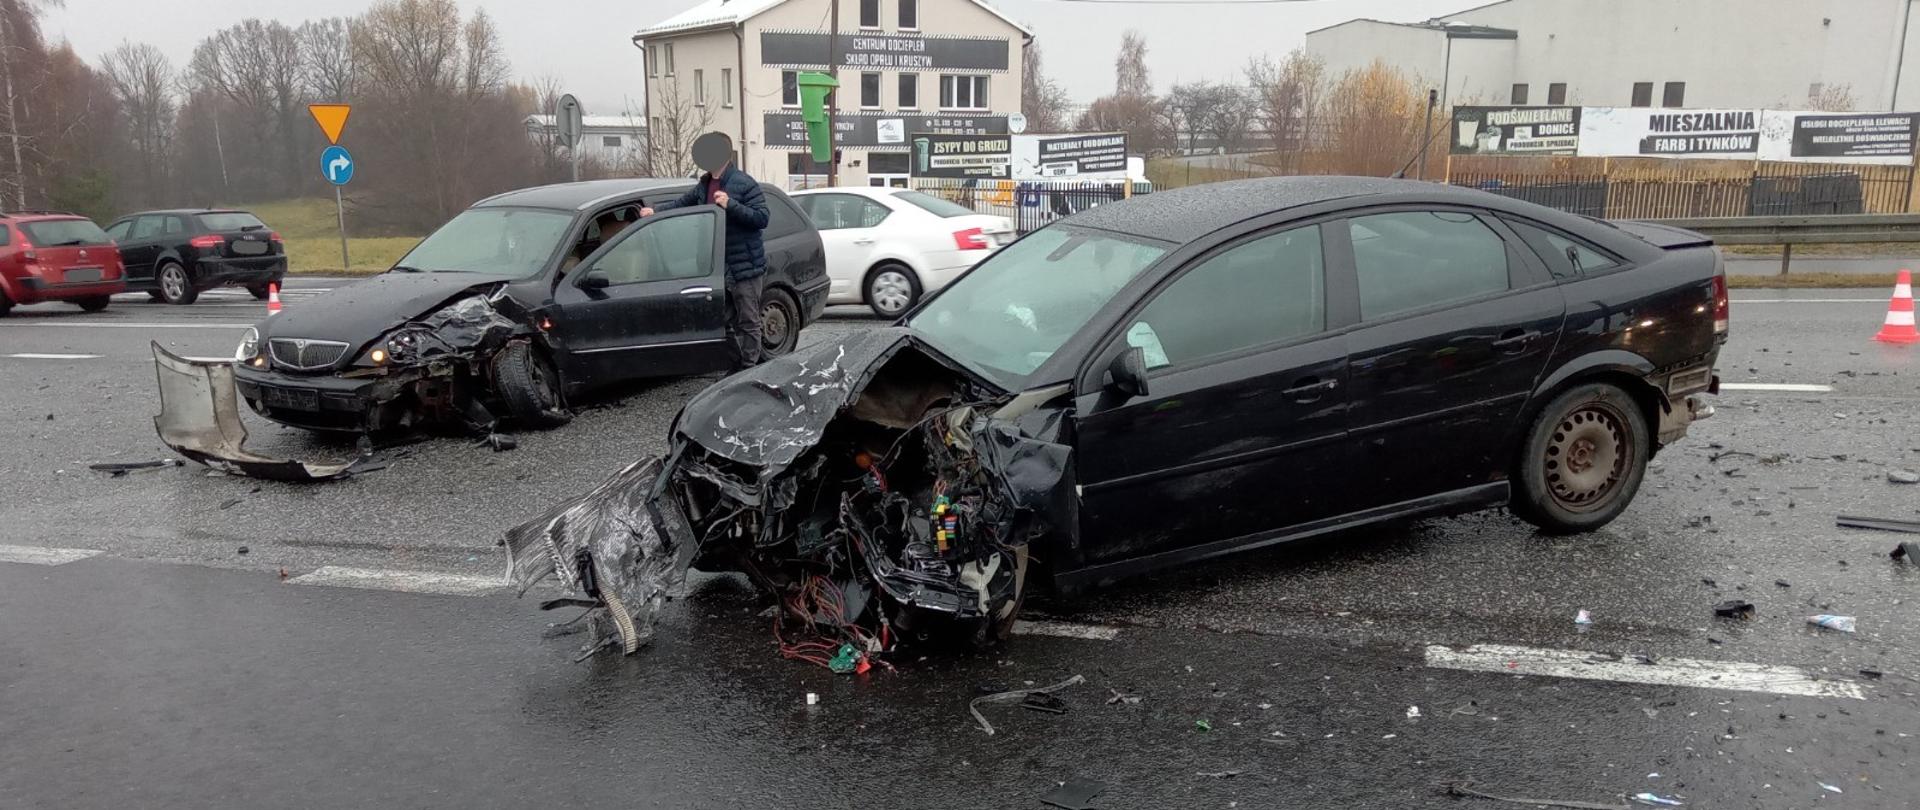 Zdjęcie przedstawia samochody osobowe zniszczone w wyniku zderzenia z innymi pojazdami znajdujące się na jezdni drogi krajowej nr 7. W tle widoczne zabudowania miejscowości i pojazdy przejeżdżające otwartym pasem ruchu w kierunku Krakowa.